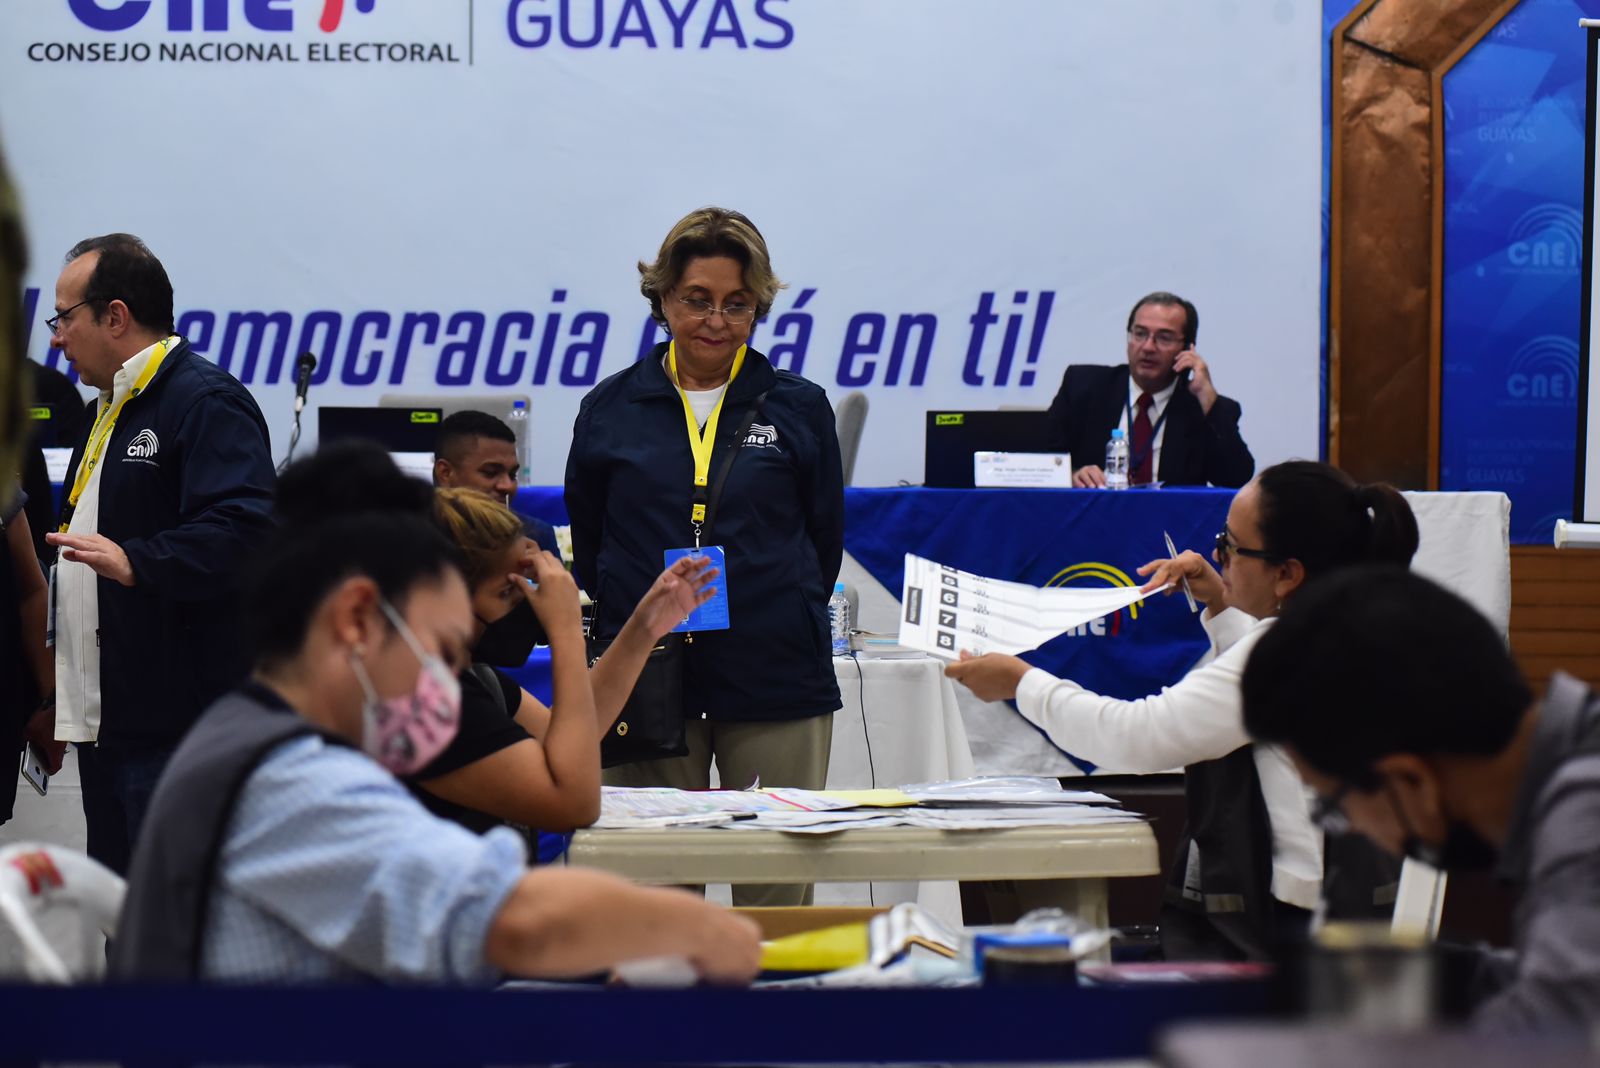 El conteo de votos continúa. El No se impuso en la consulta. Foto: Enrique Pesantes / EL COMERCIO